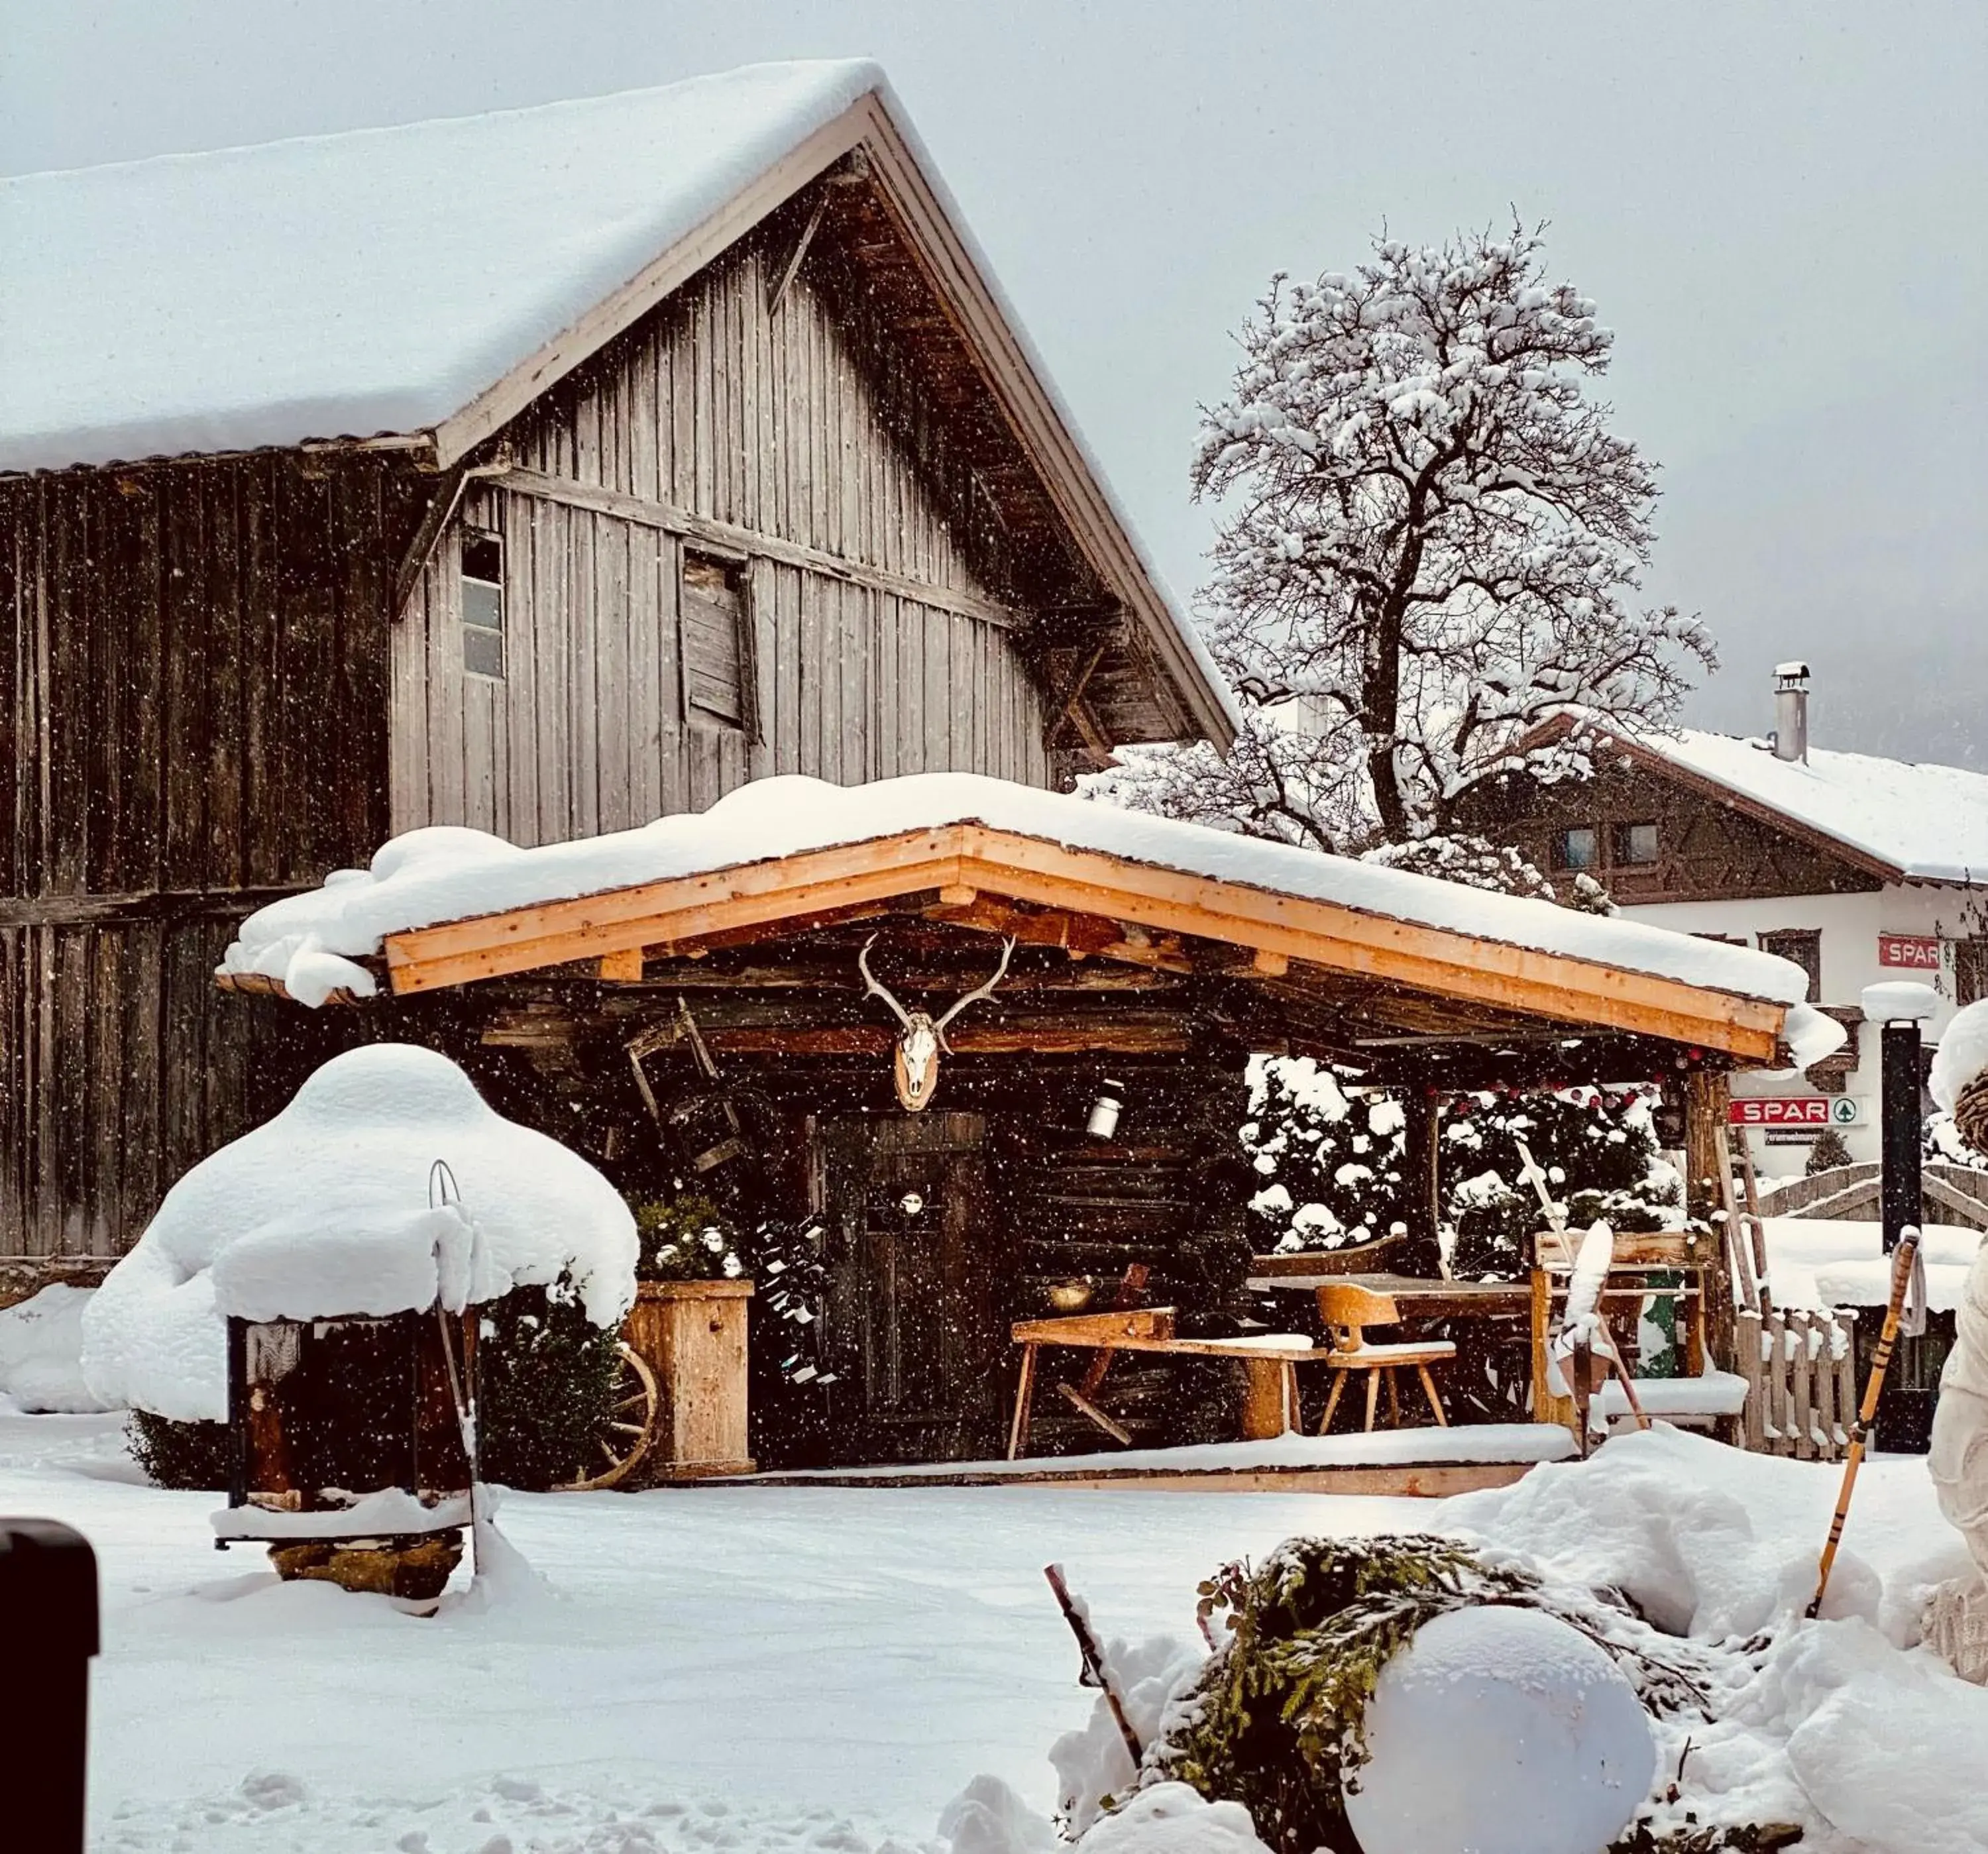 Winter in Hotel Alpenstolz